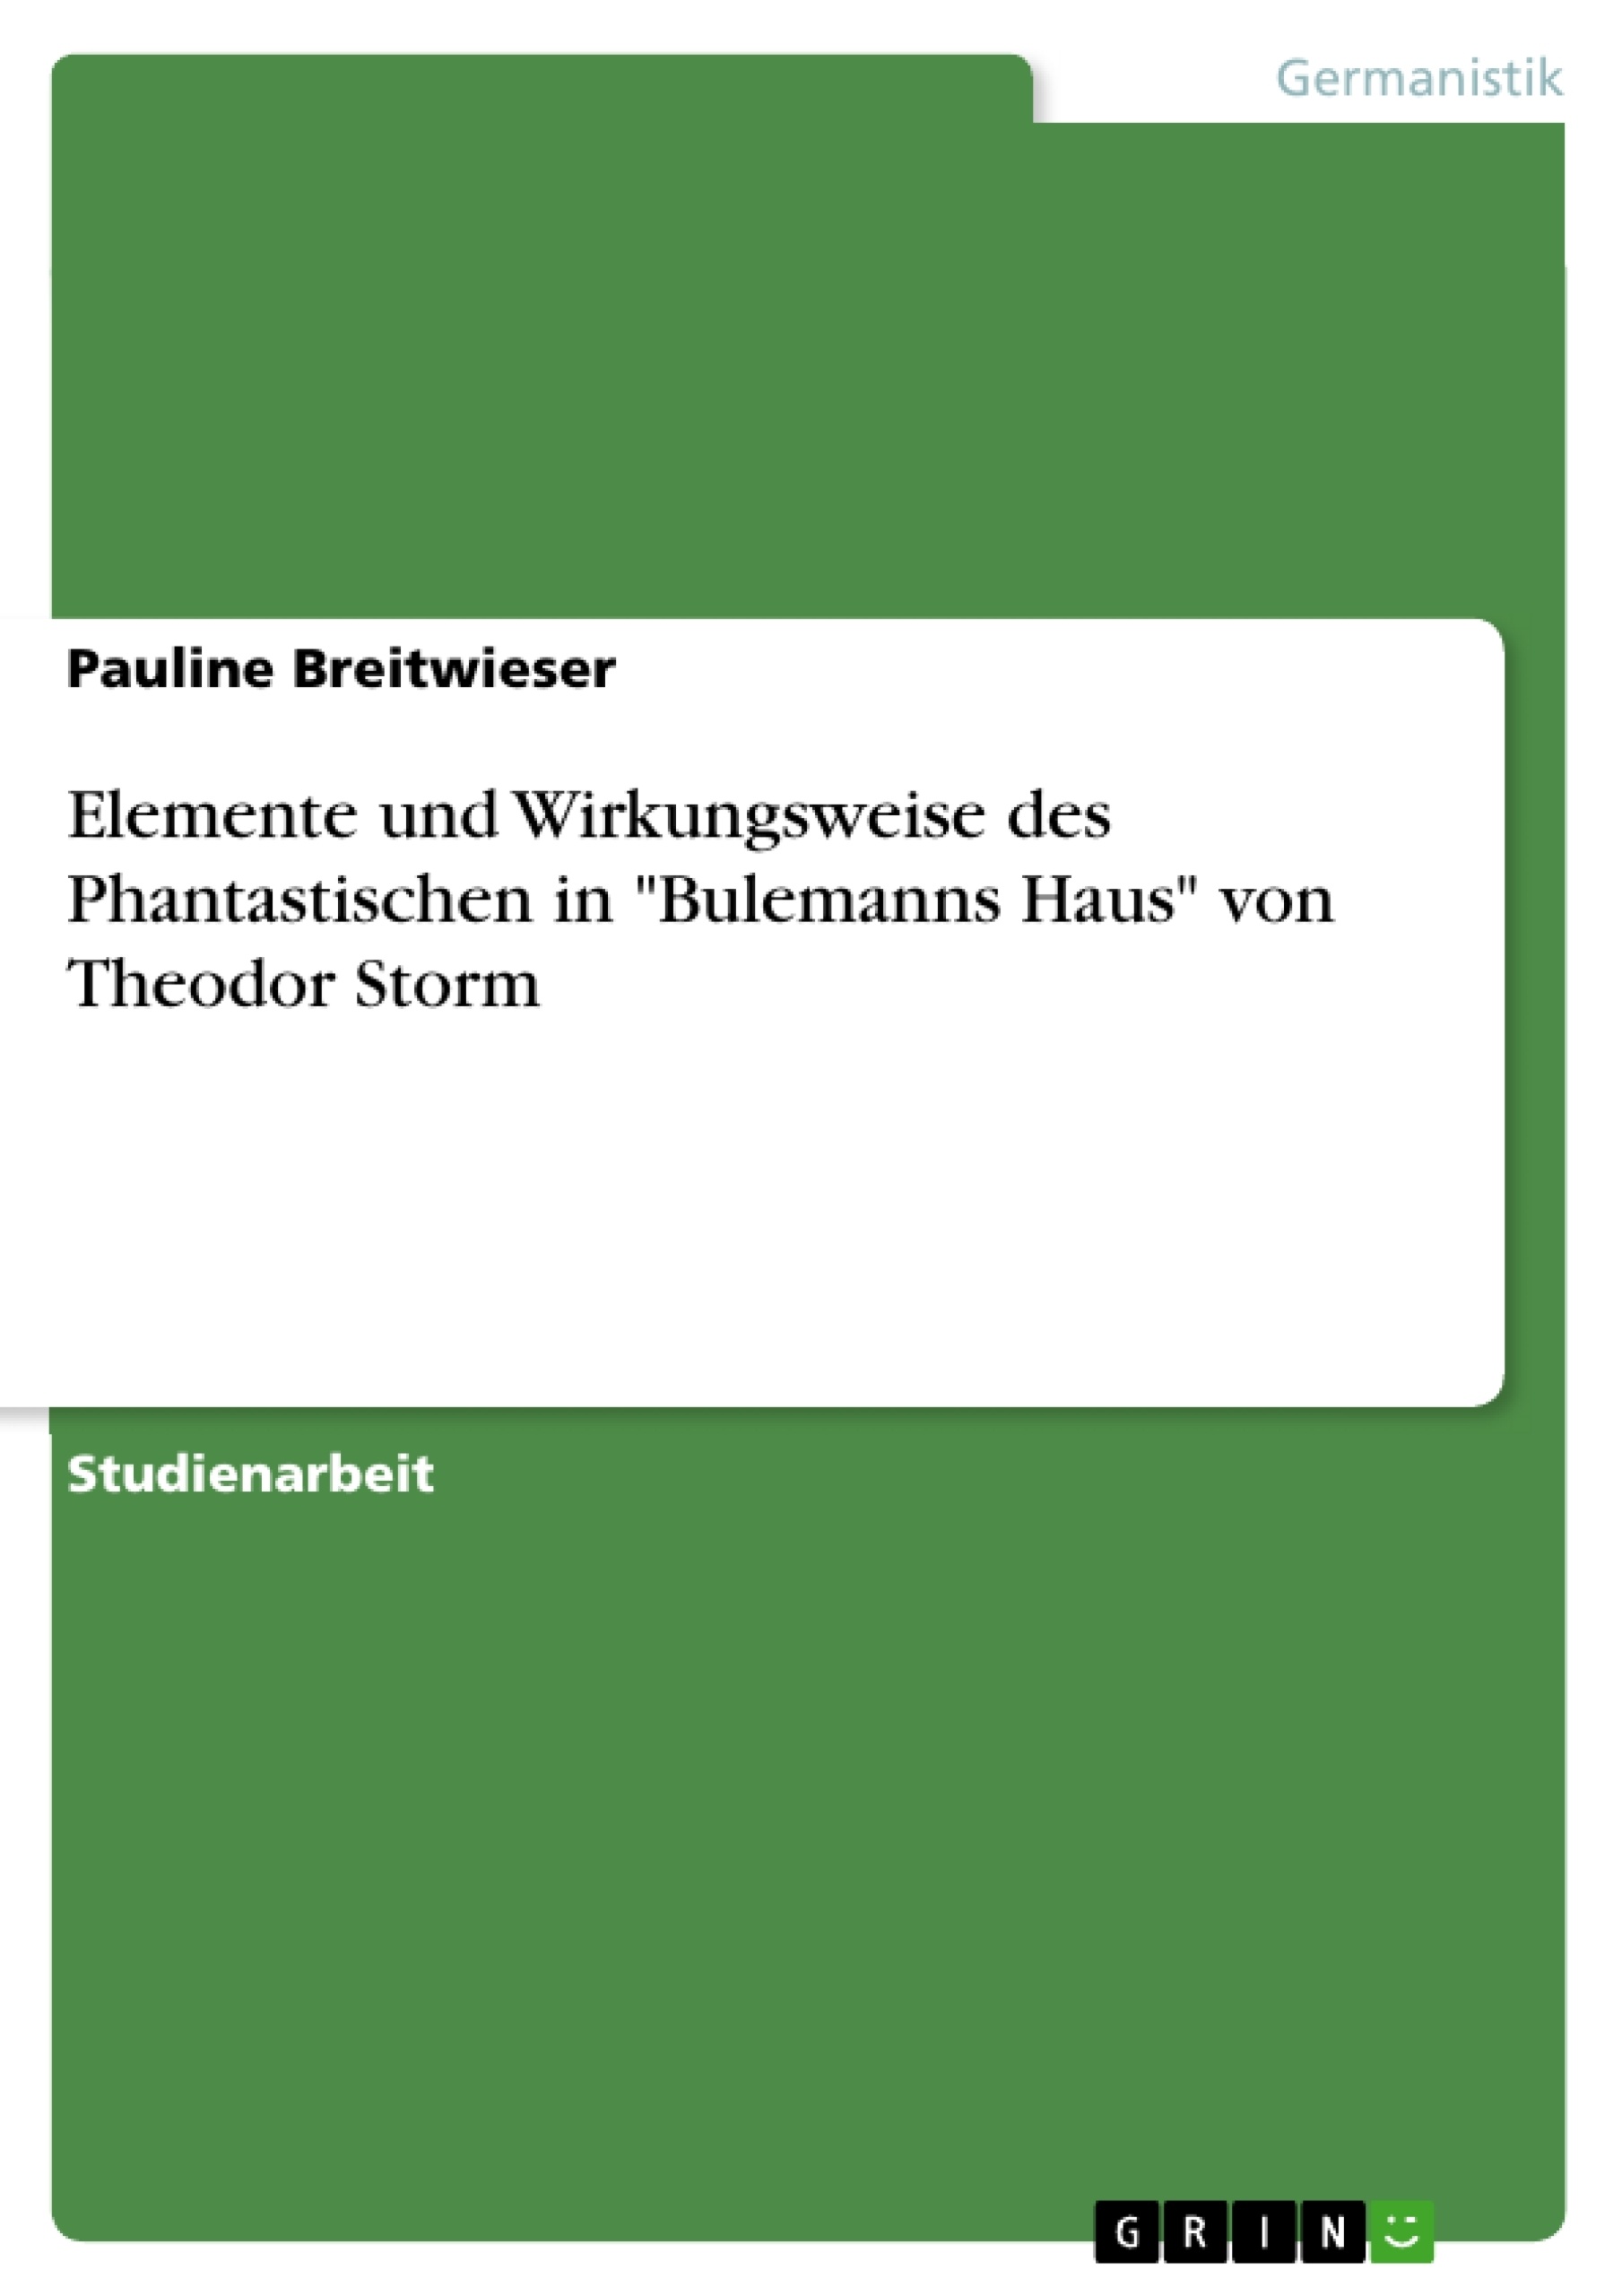 Title: Elemente und Wirkungsweise des Phantastischen in "Bulemanns Haus" von Theodor Storm